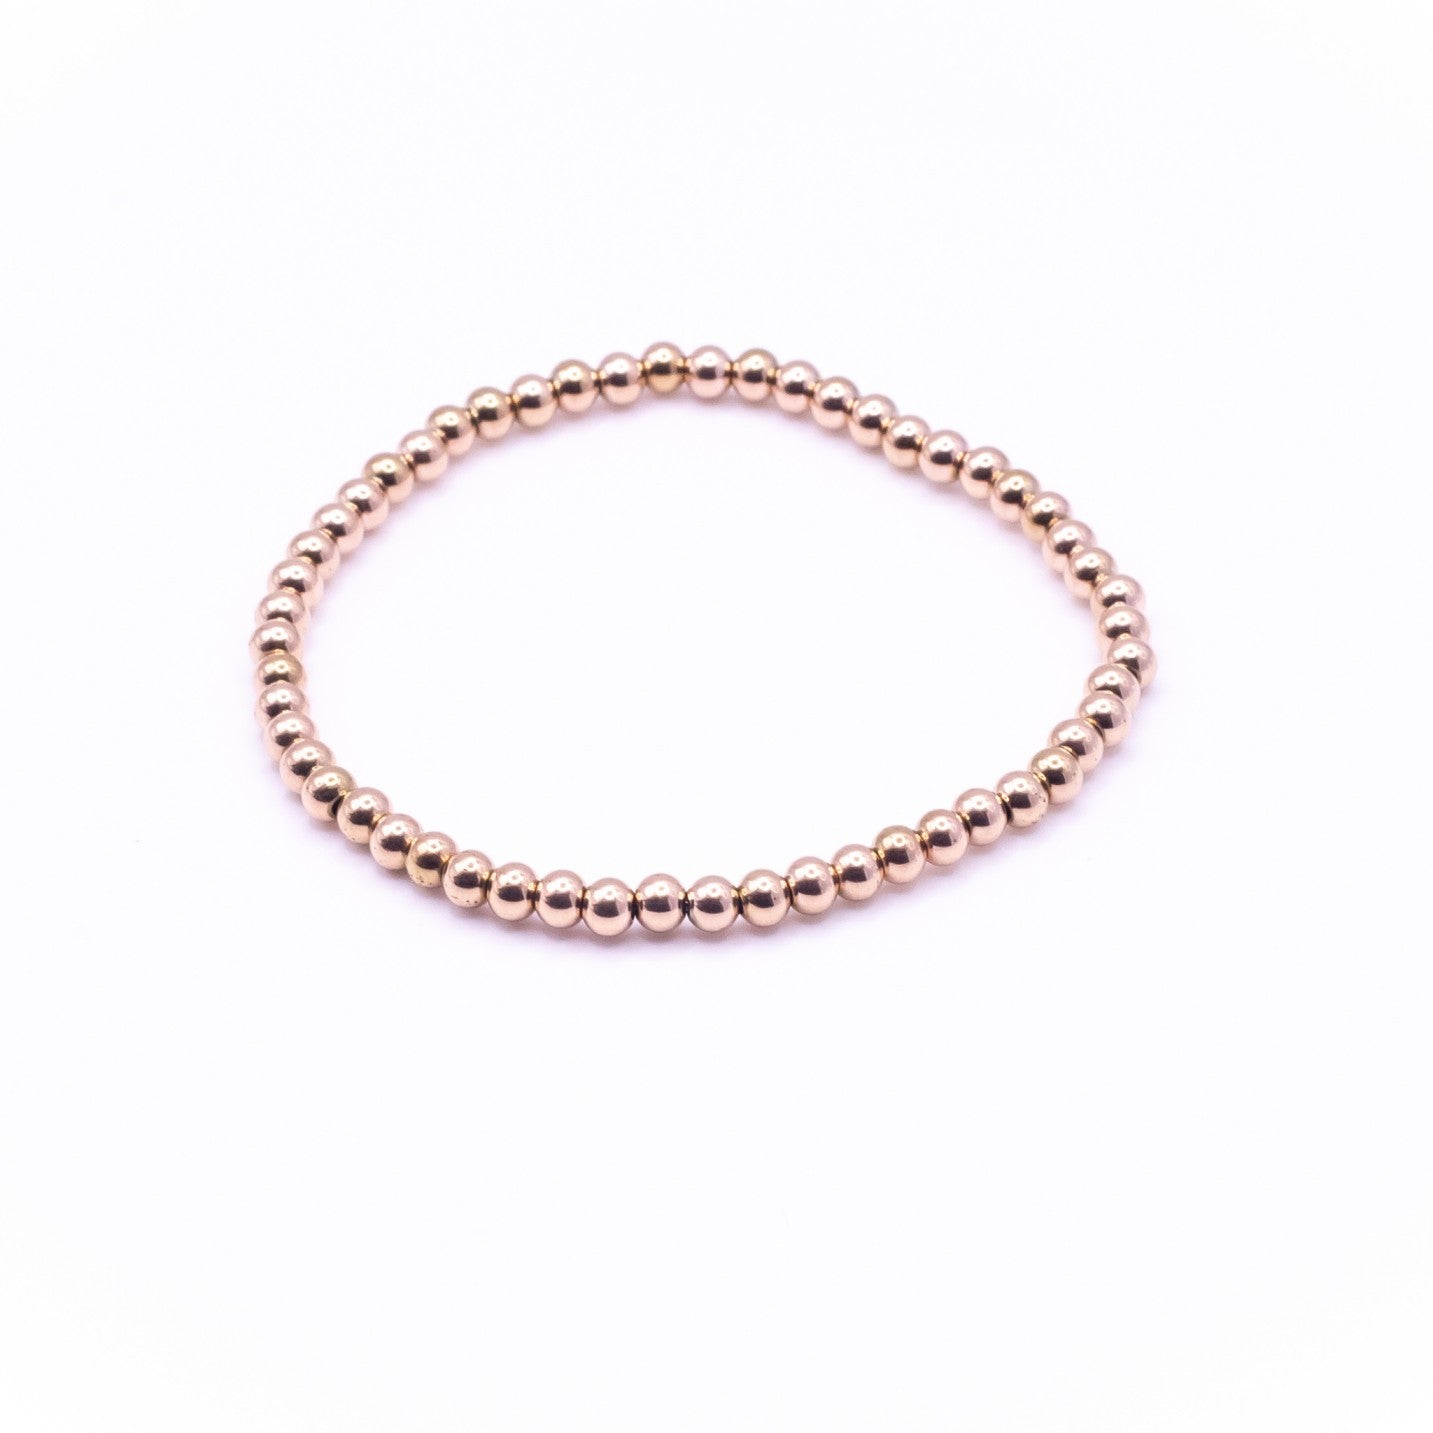 Original Bracelet Bundle in Rose Gold - getbalmy